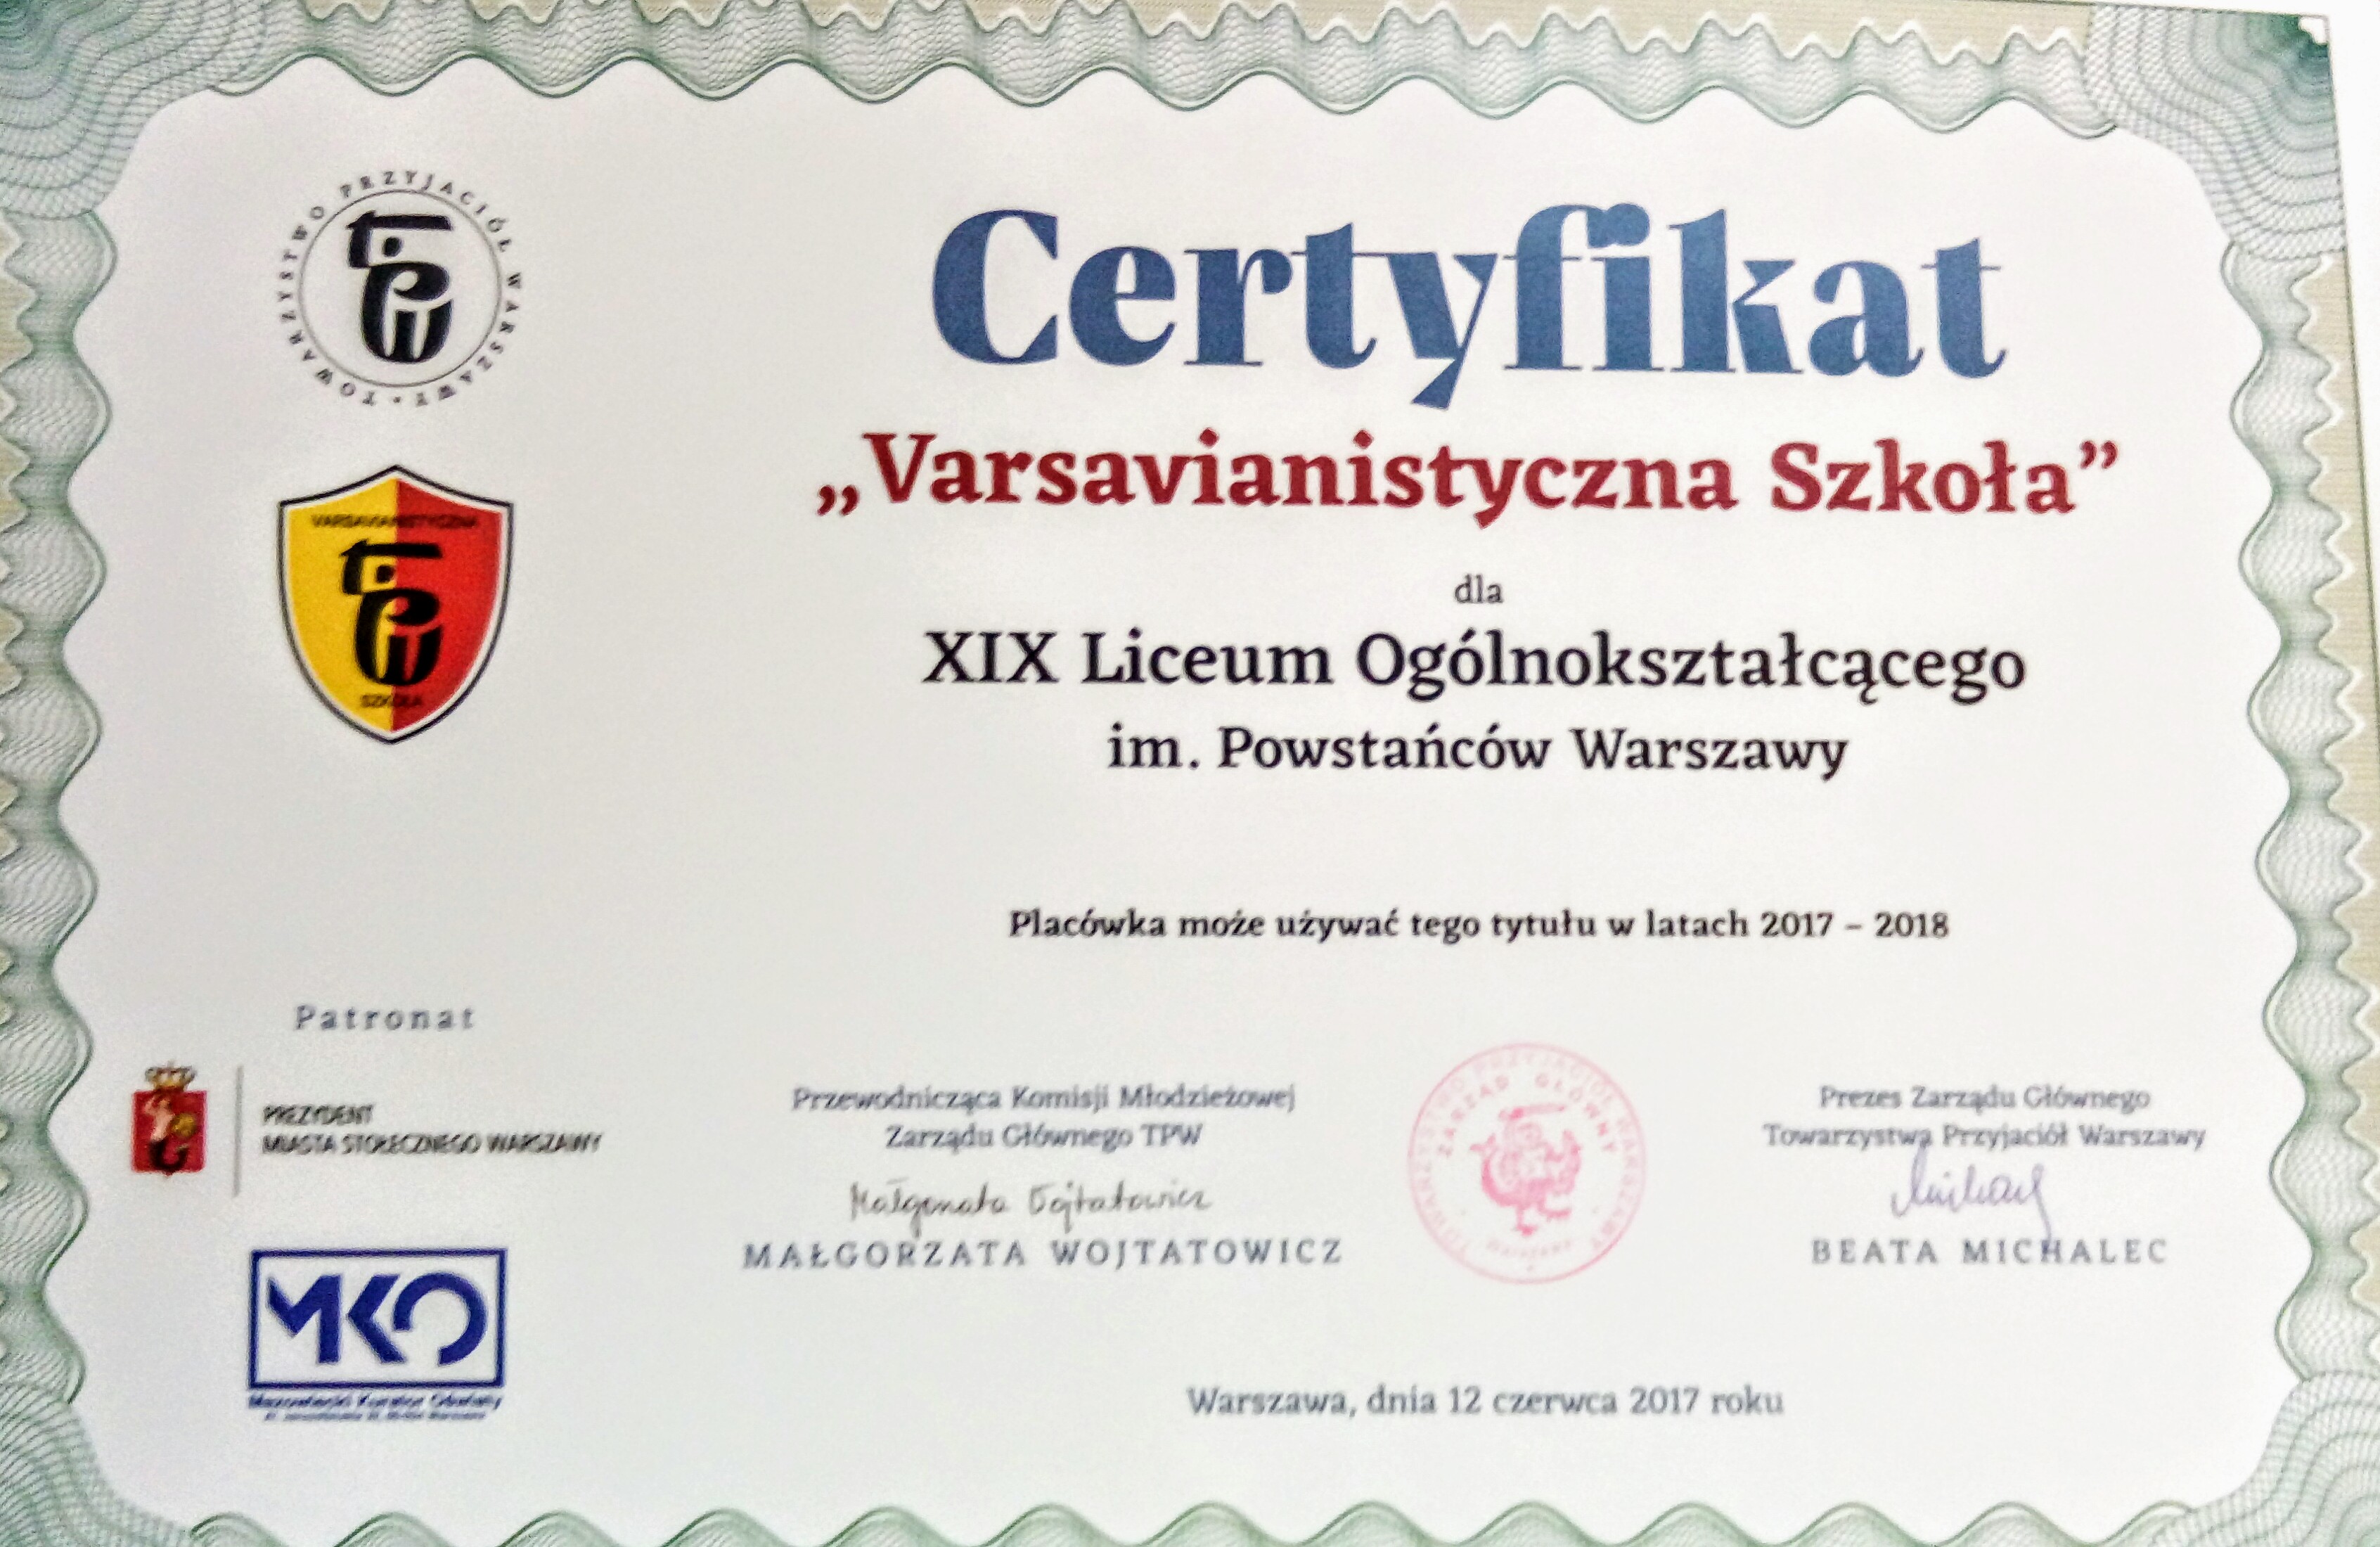 certyfikat varsavianistyczny